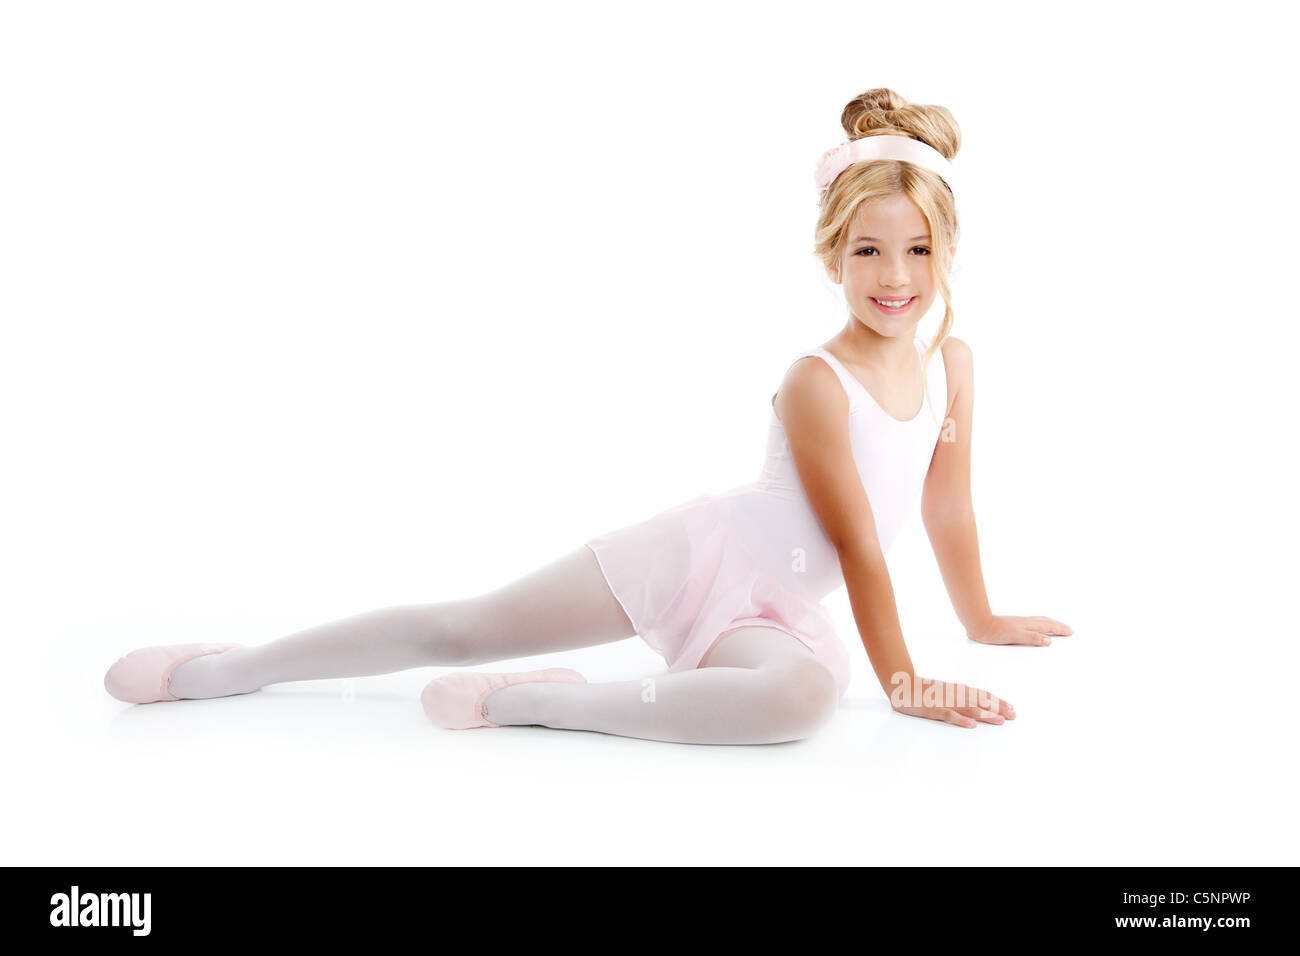 Ballerina little ballet children dancer stretching sitting on white floor Stock Photo